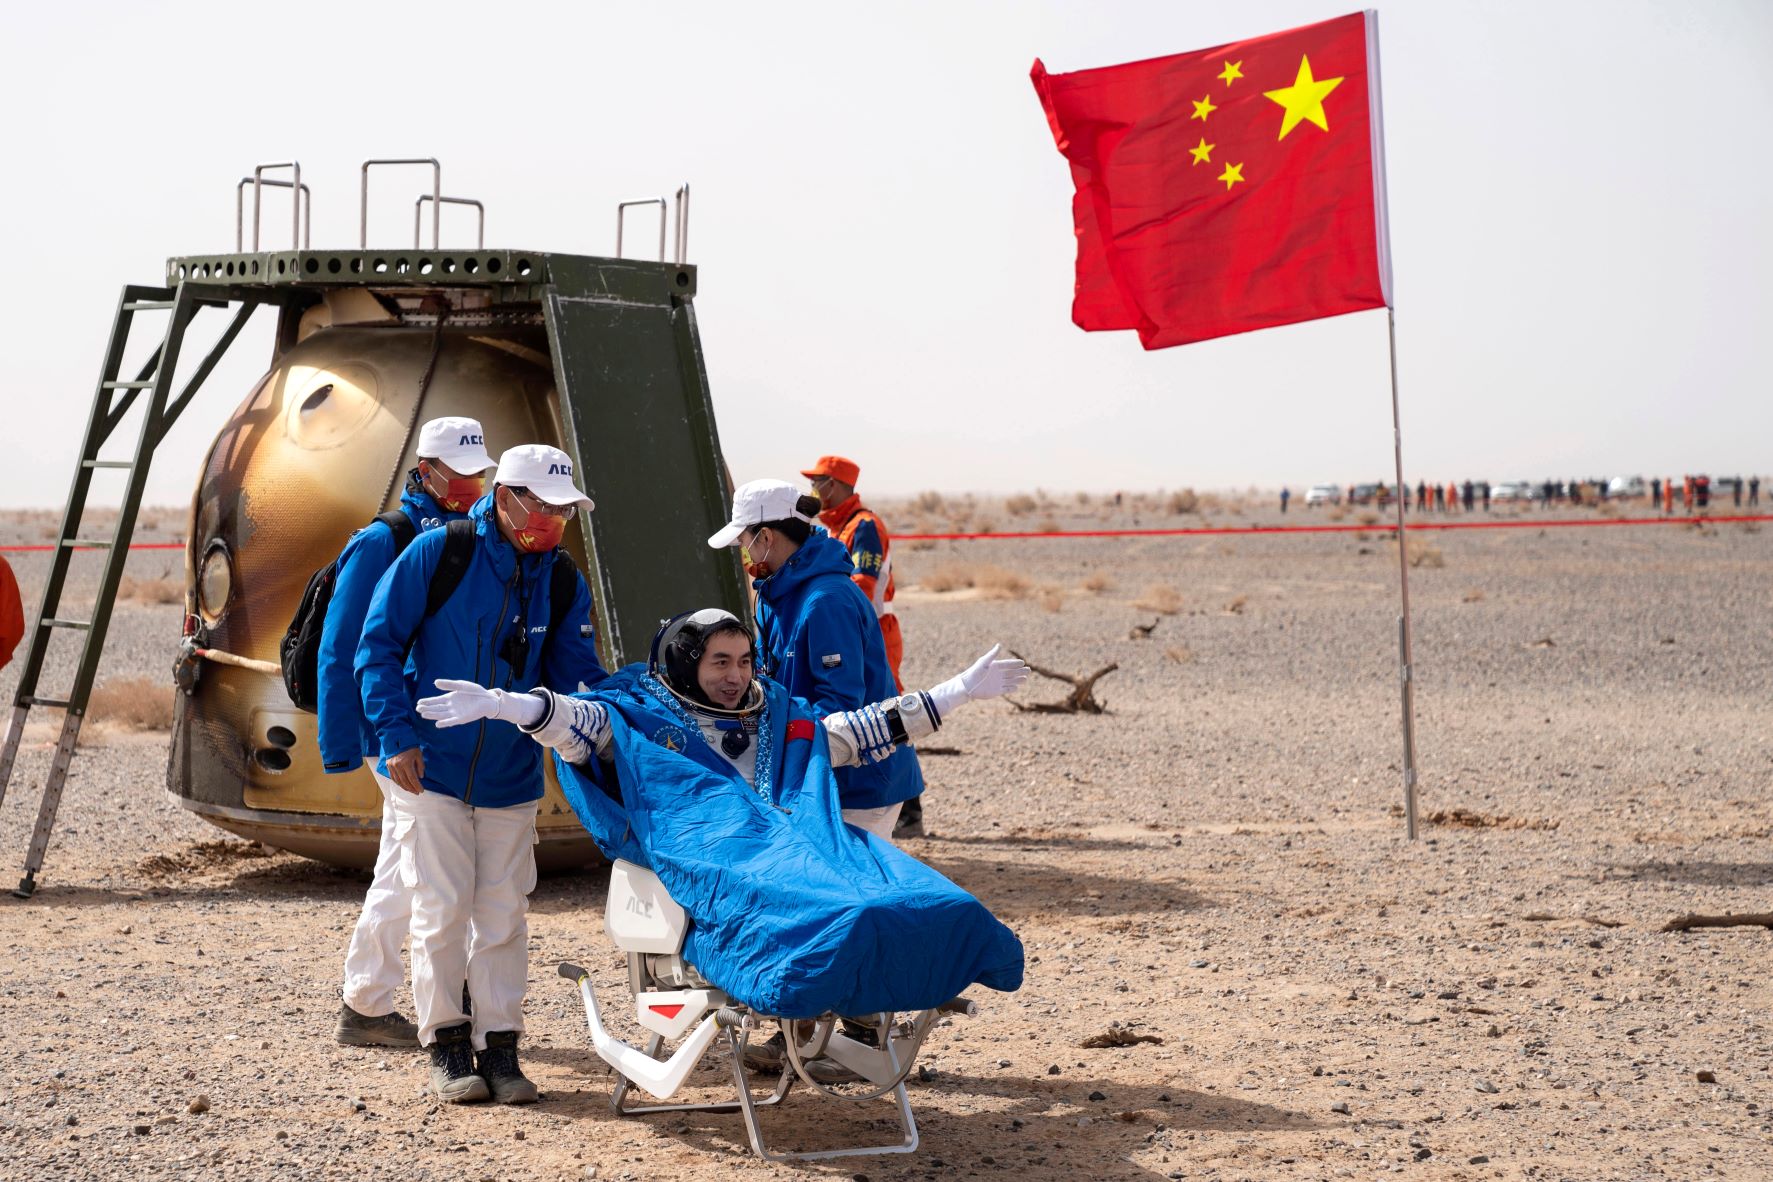 رائد الفضاء الصيني يي غوانغ فو جالساً على كرسي خارج كبسولة العودة من المركبة "شِنزهو- 13" عقب مهمة فضائية مأهولة. حطت الكبسولة في موقع هبوط في منشوريا الصينية